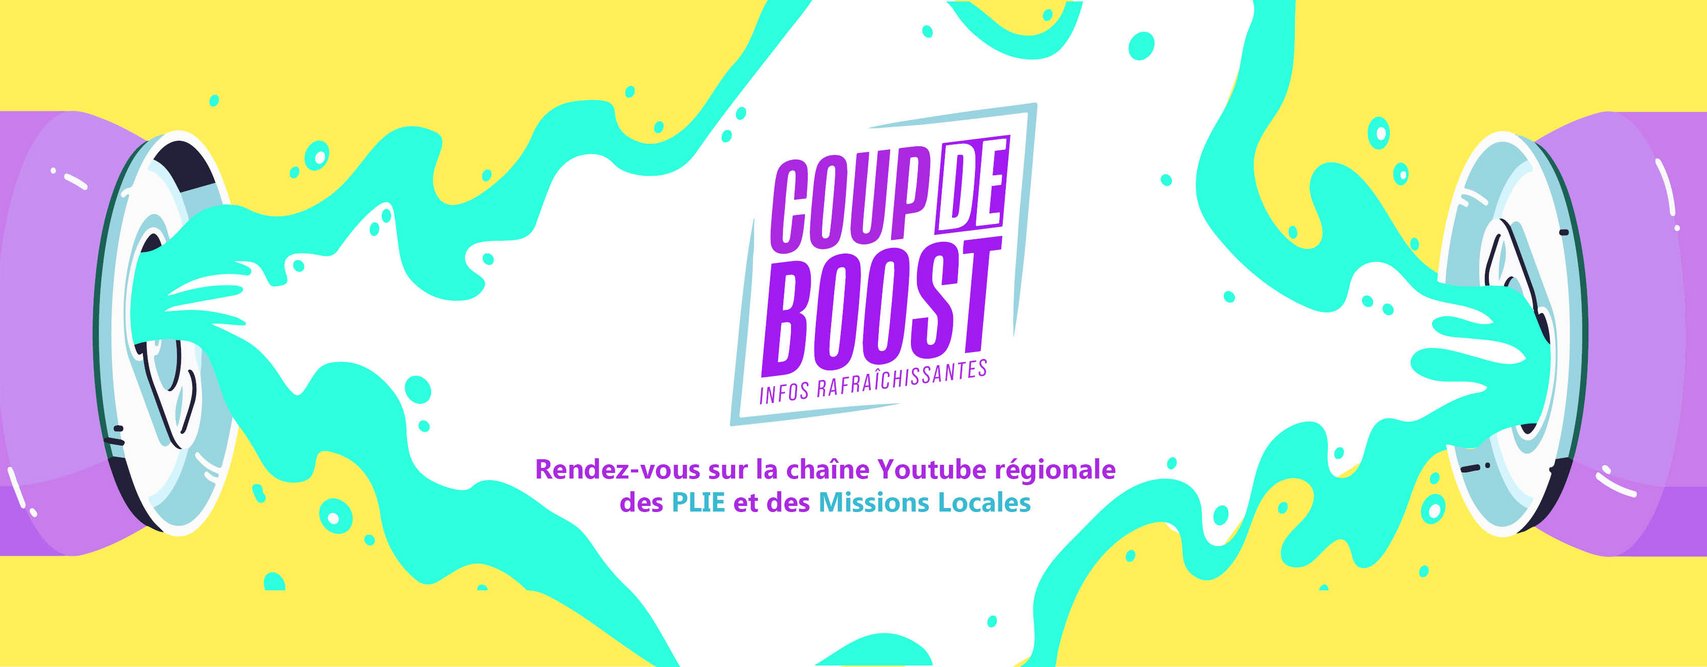 COUP DE BOOST, la chaine YouTube régionales des Missions Locales et des PLIE 